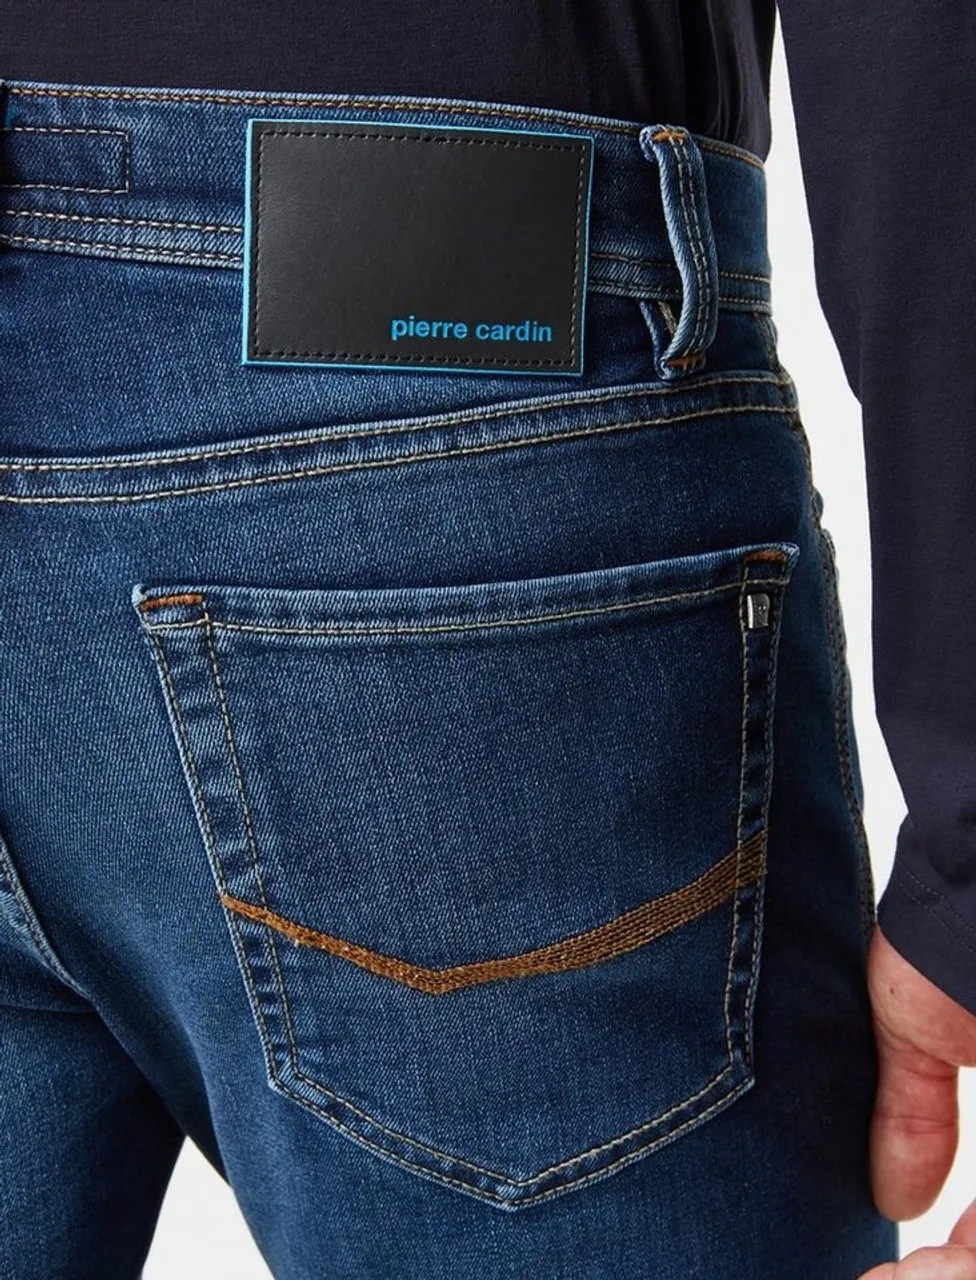 Pierre Cardin 5-Pocket-Jeans PIERRE CARDIN FUTUREFLEX LYON dark vintage blue used washed 3451 8880.